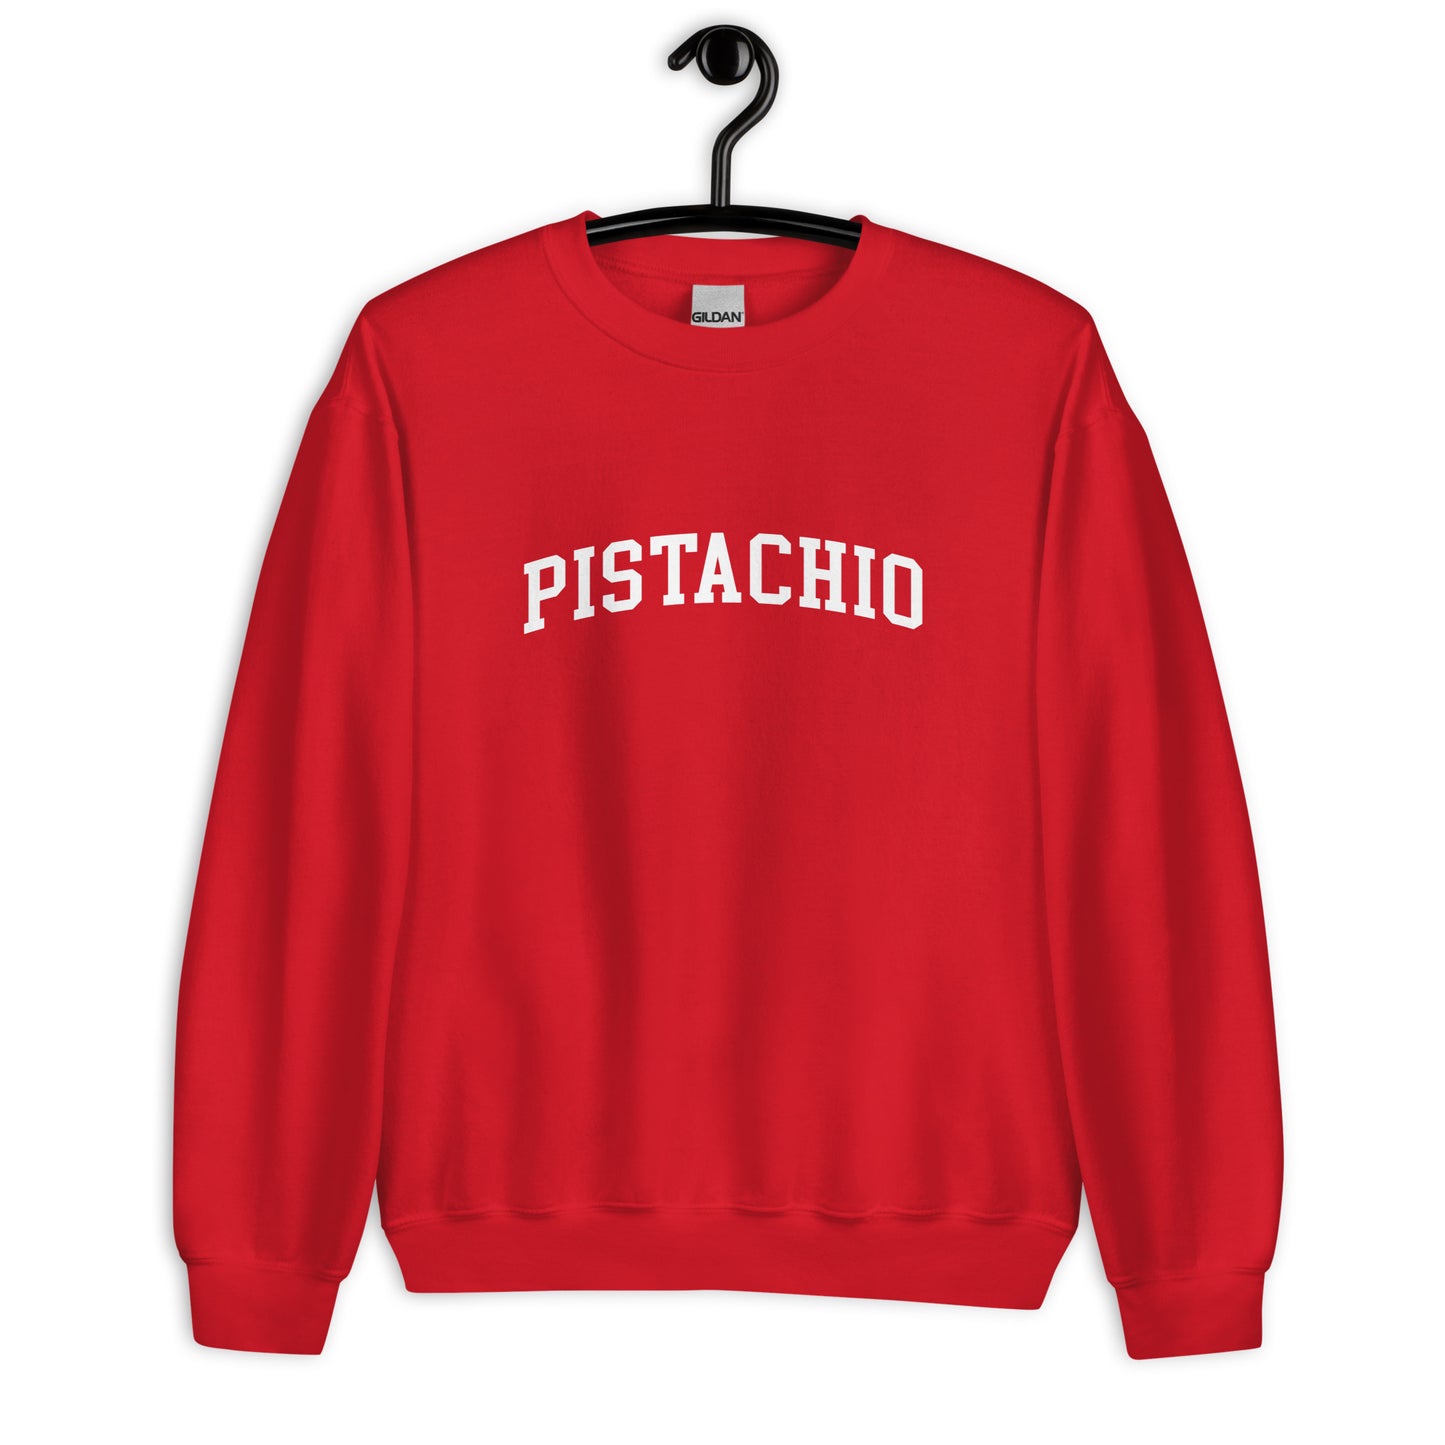 Pistachio Sweatshirt - Arched Font